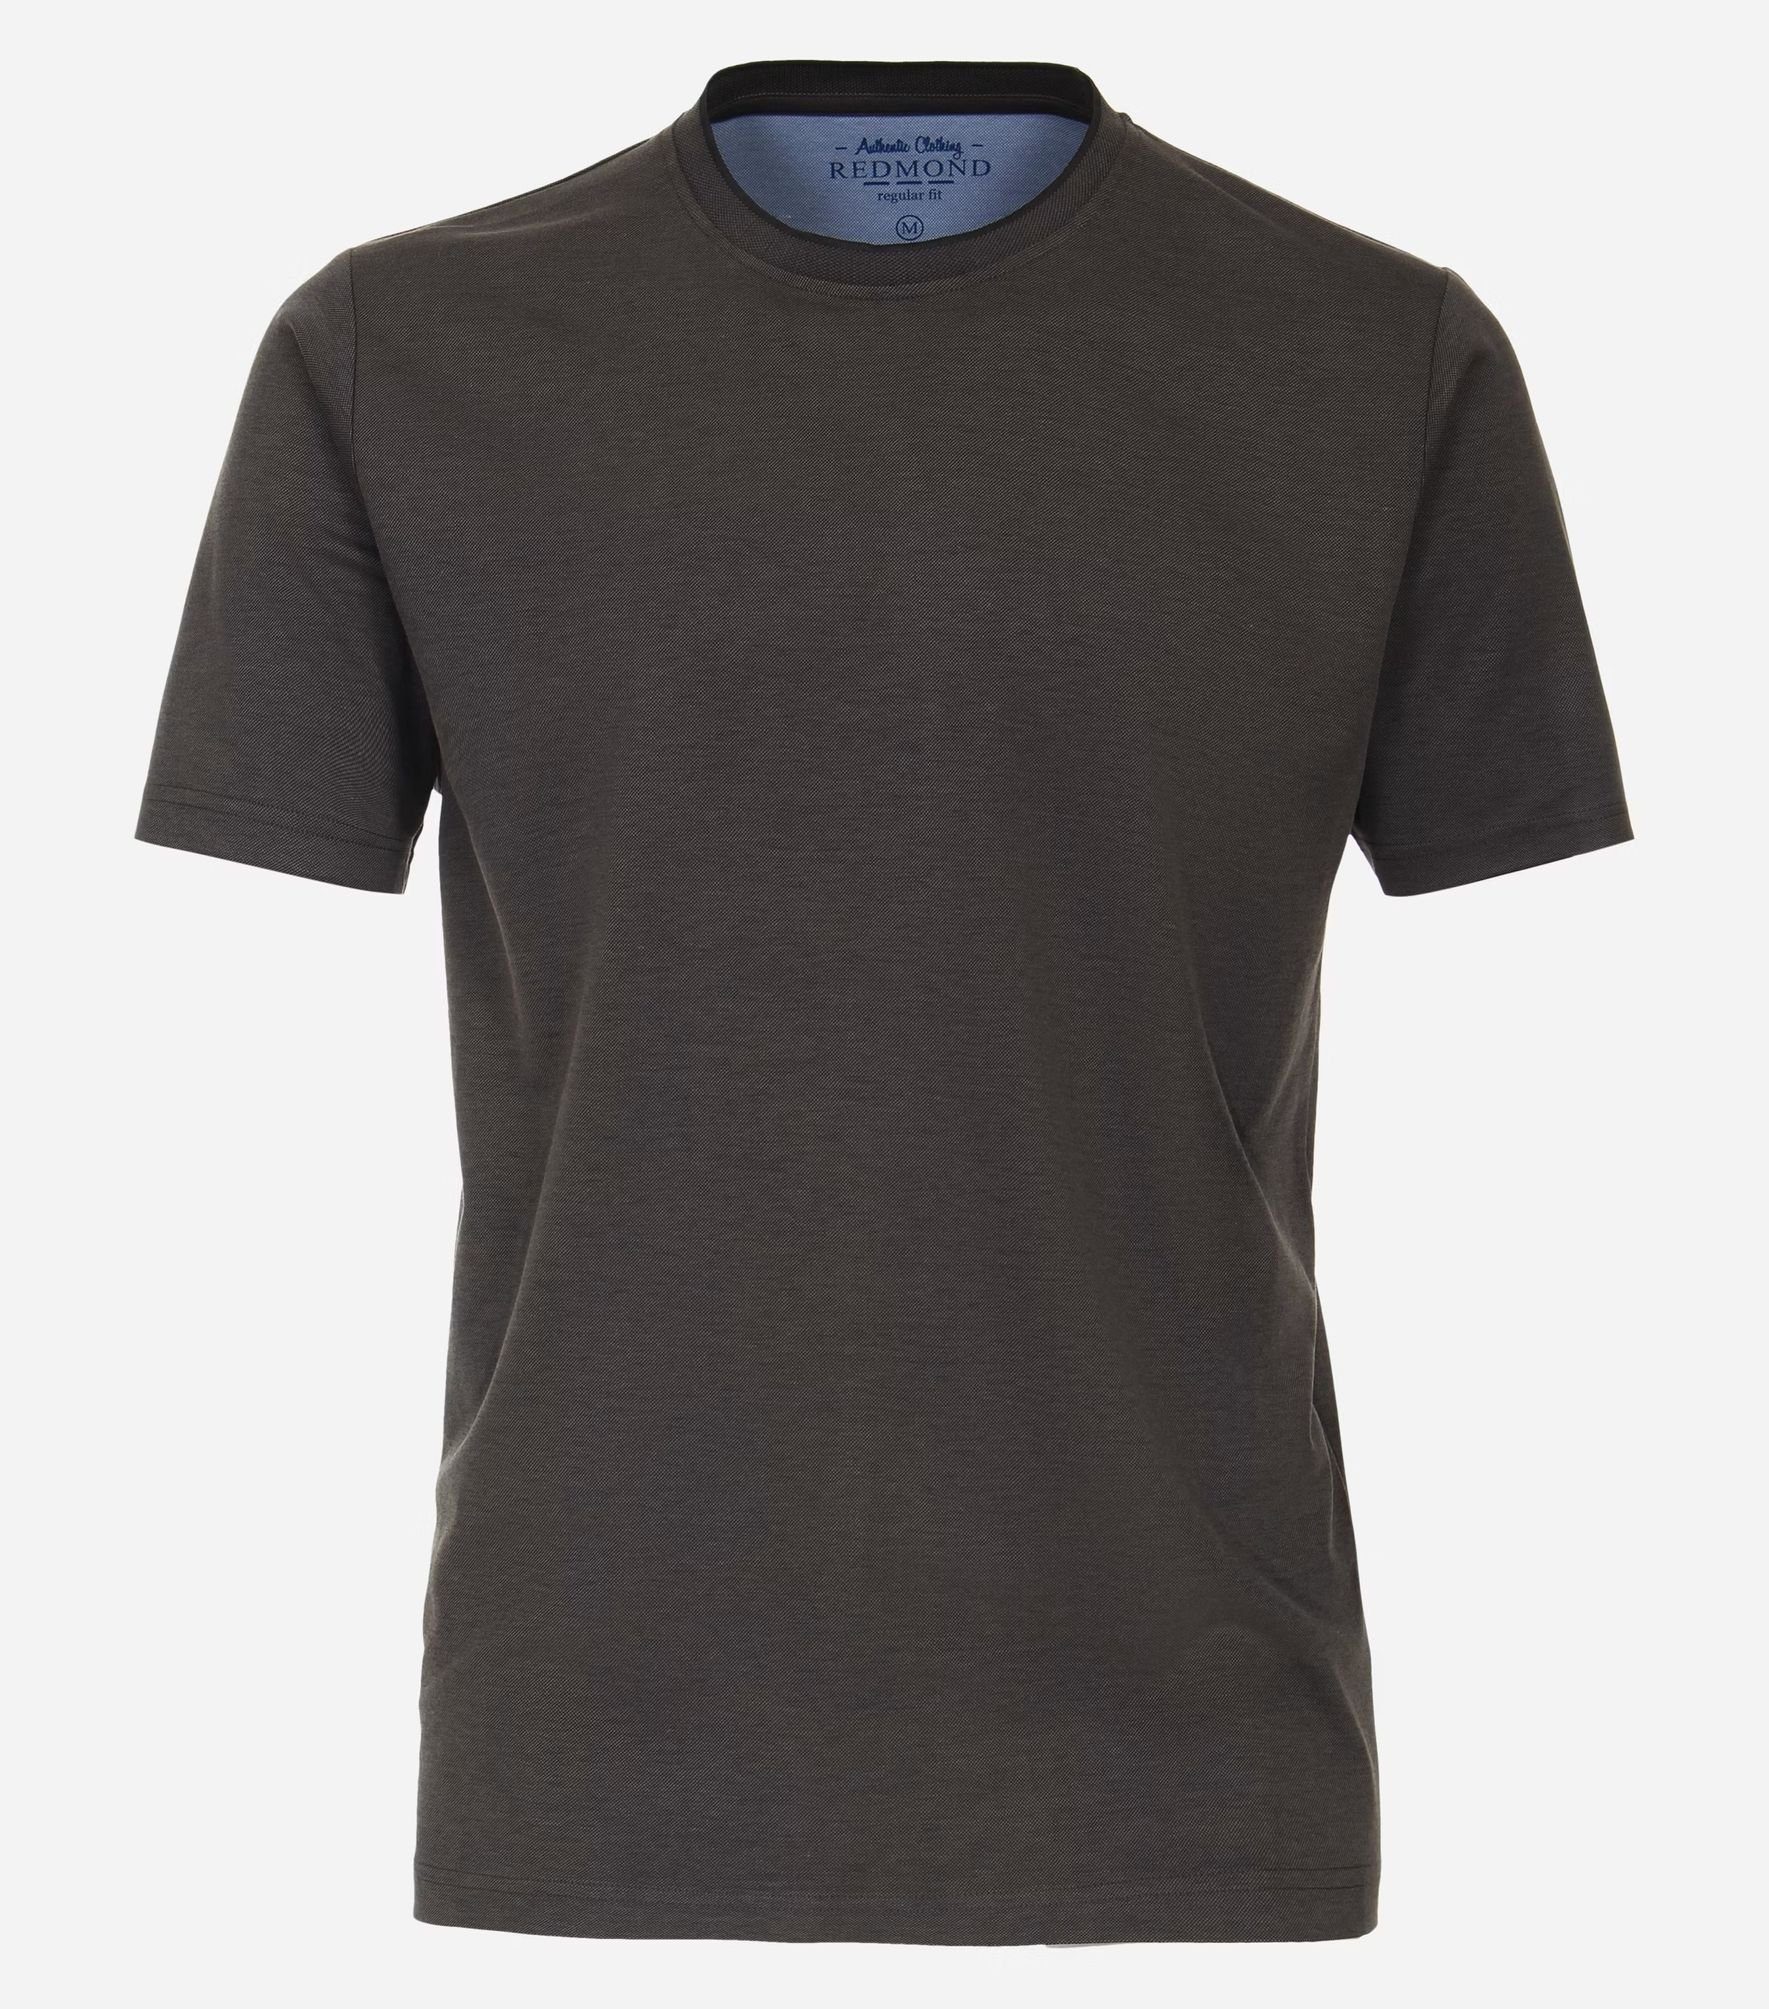 231930650 Grau(79) T-Shirt Redmond pflegeleicht